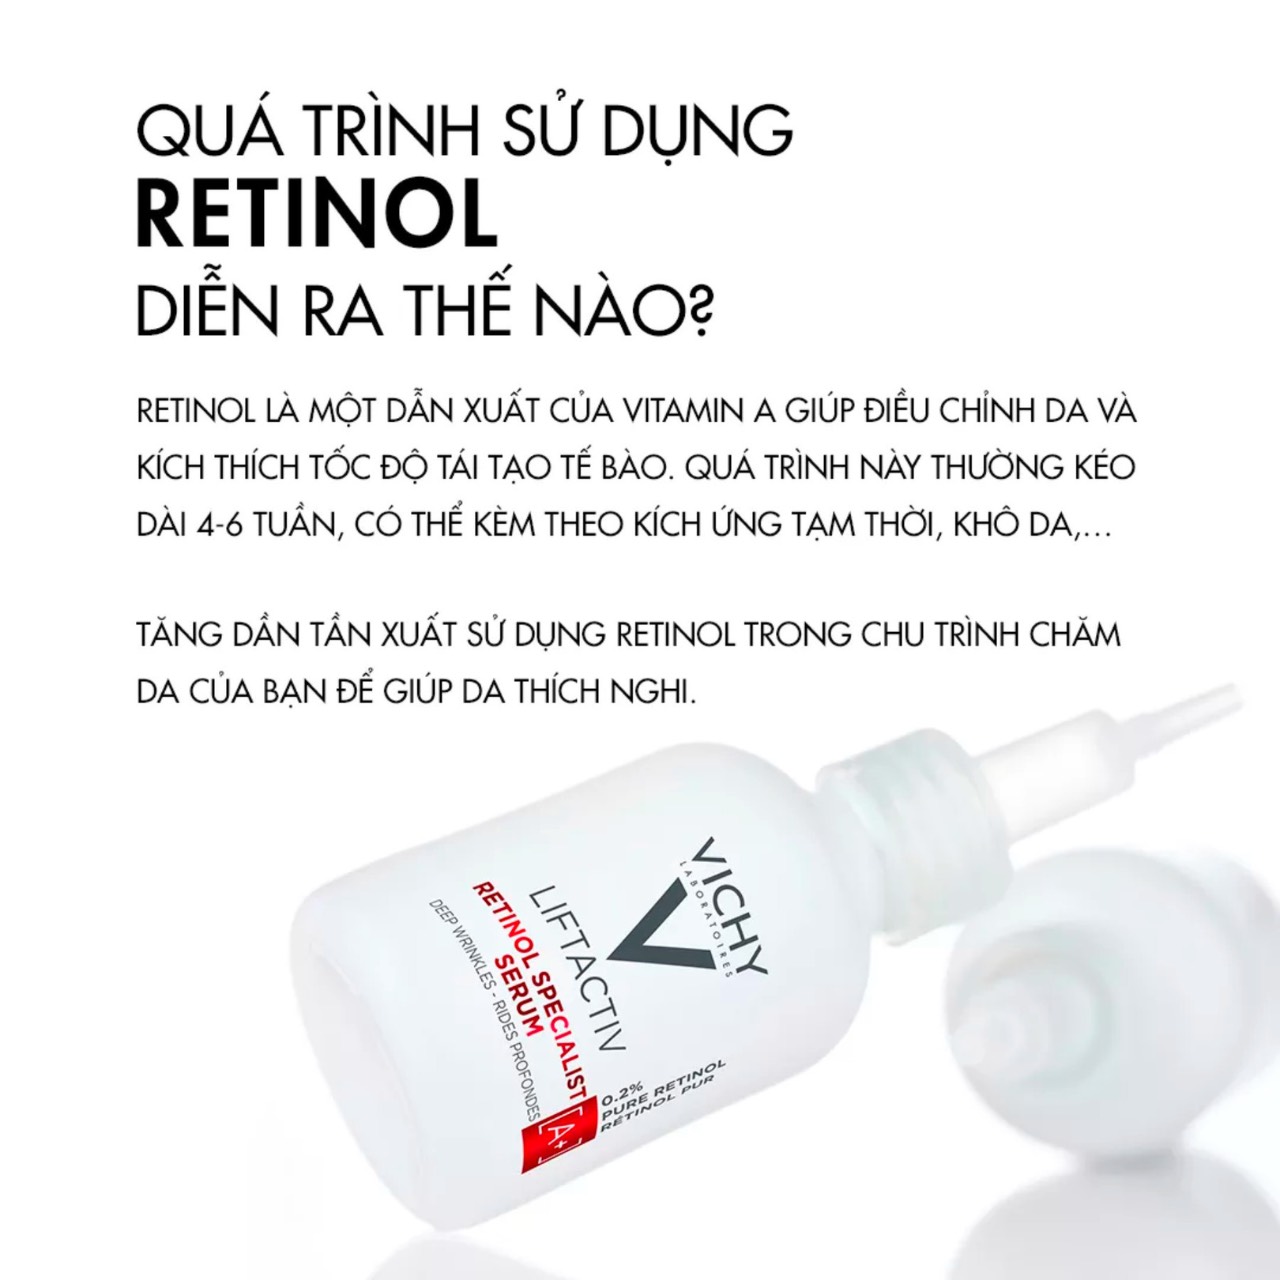 [VICHY] Dưỡng Chất Chứa Retinol Giúp Cấp Ẩm & Chống Lão Hoá Liftactiv Retinol Specialist Deep Wrinkles Serum 30ml